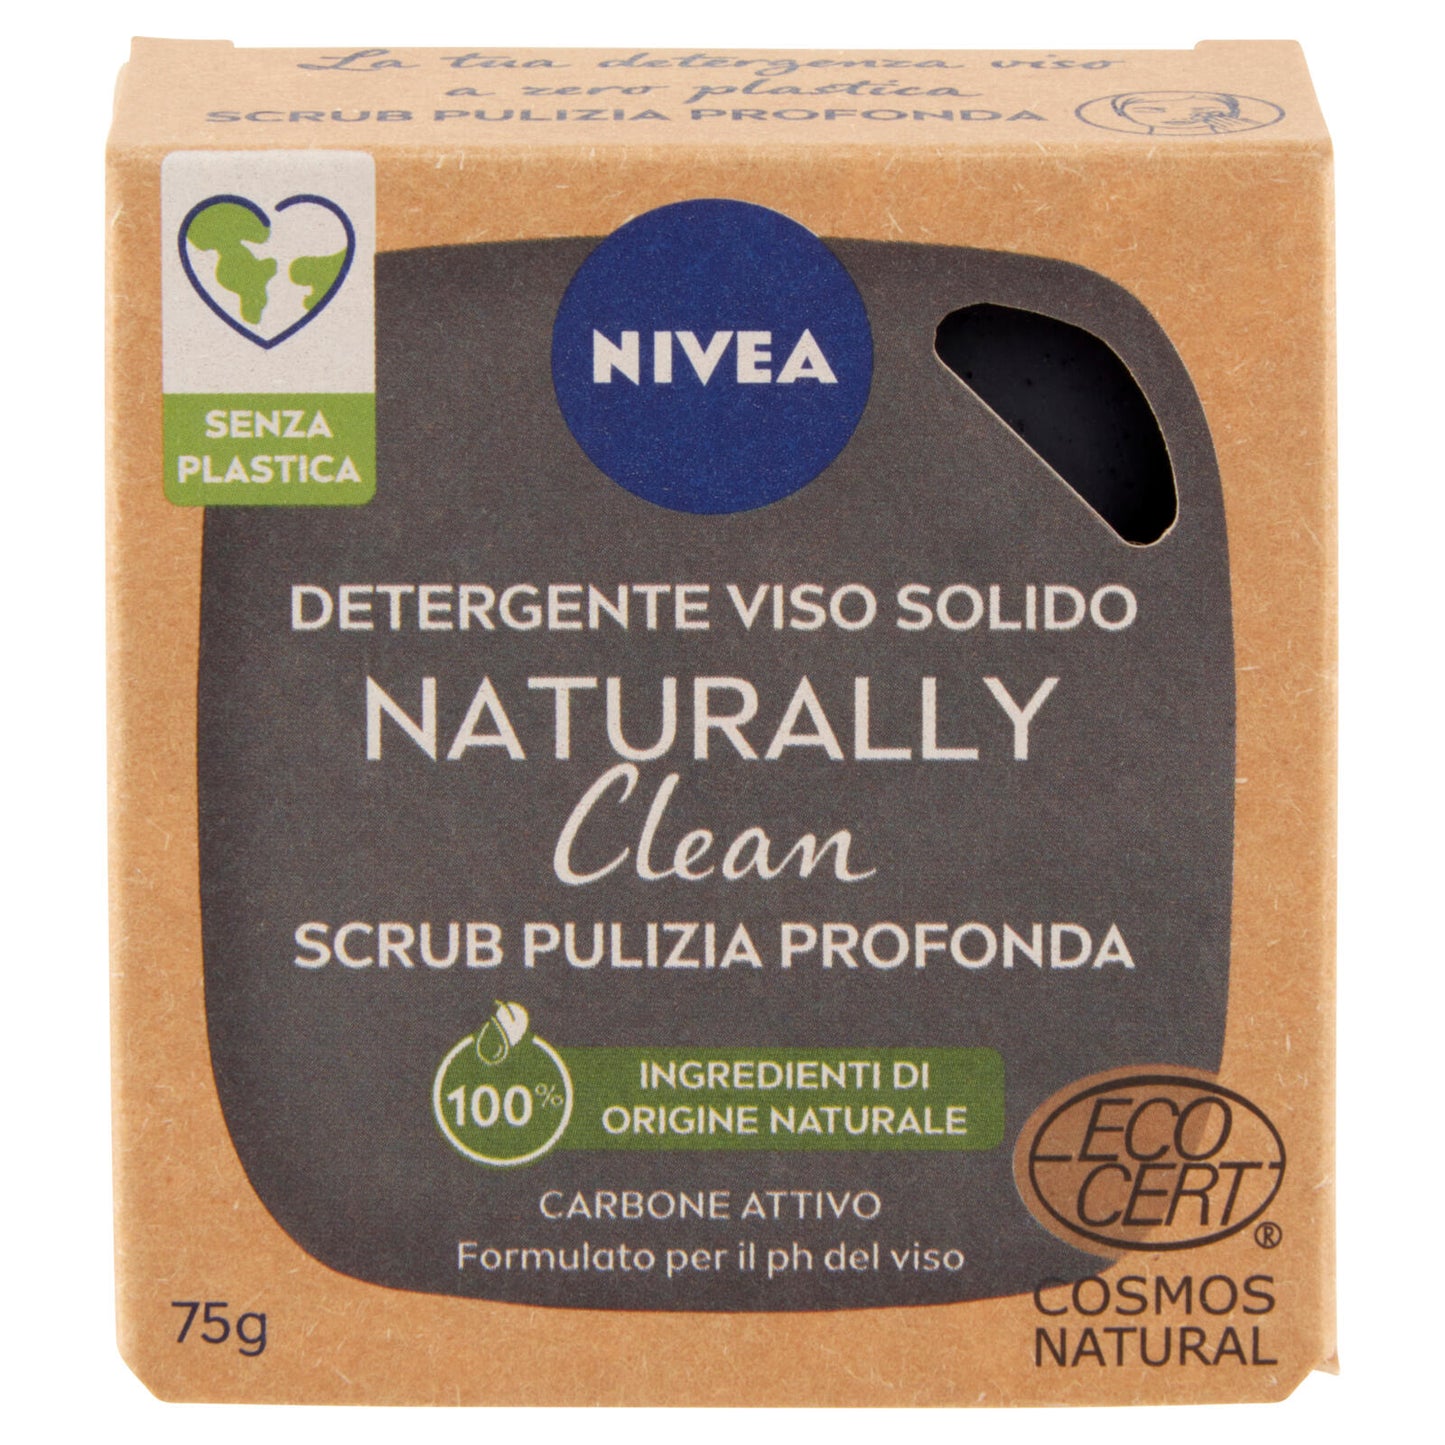 Nivea Naturally Clean Detergente Viso Solido Scrub Pulizia Profonda 75 g